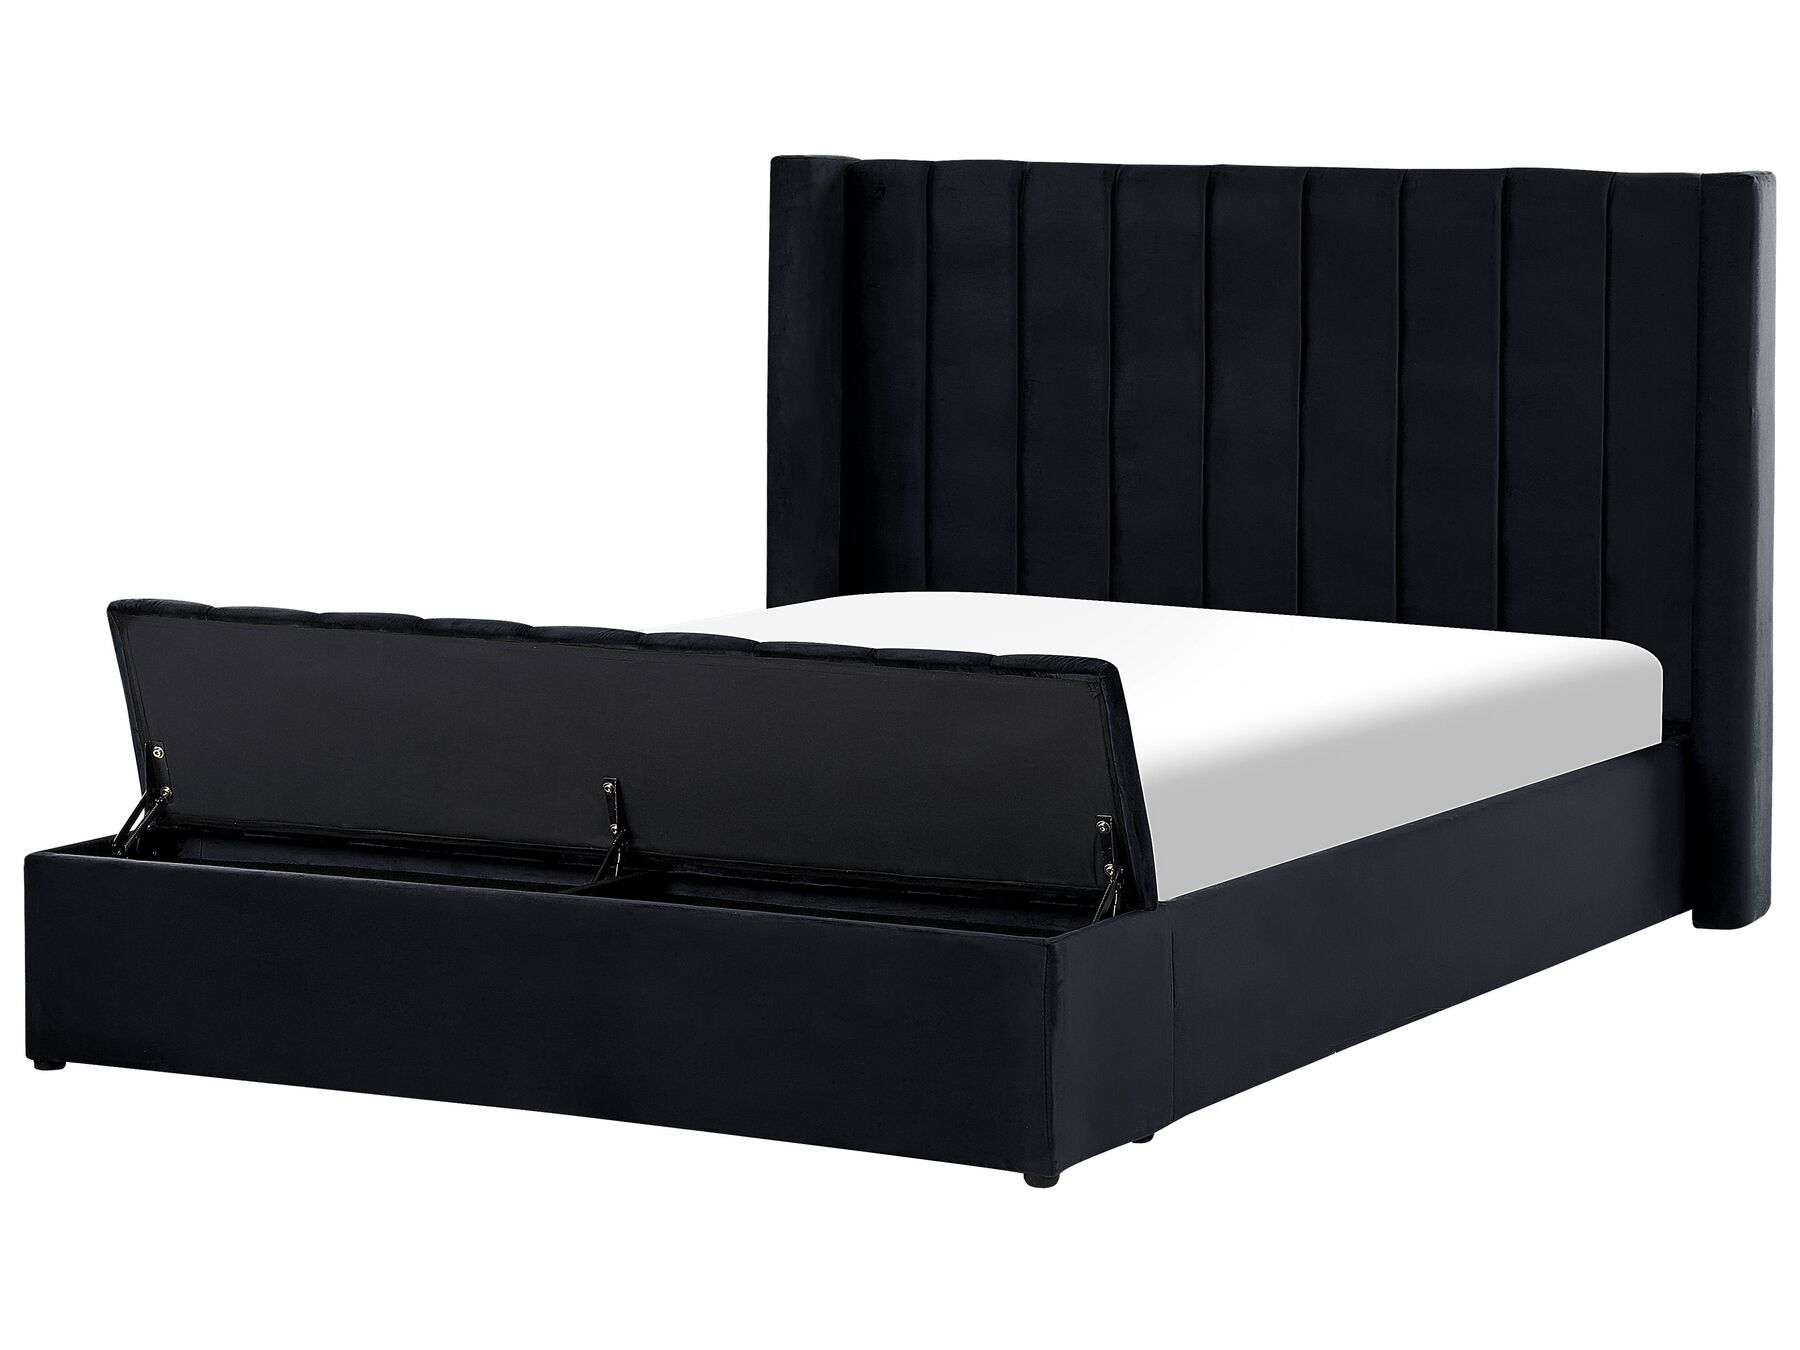 Sametová vodní postel s úložným prostorem 160 x 200 cm černá NOYERS_915167